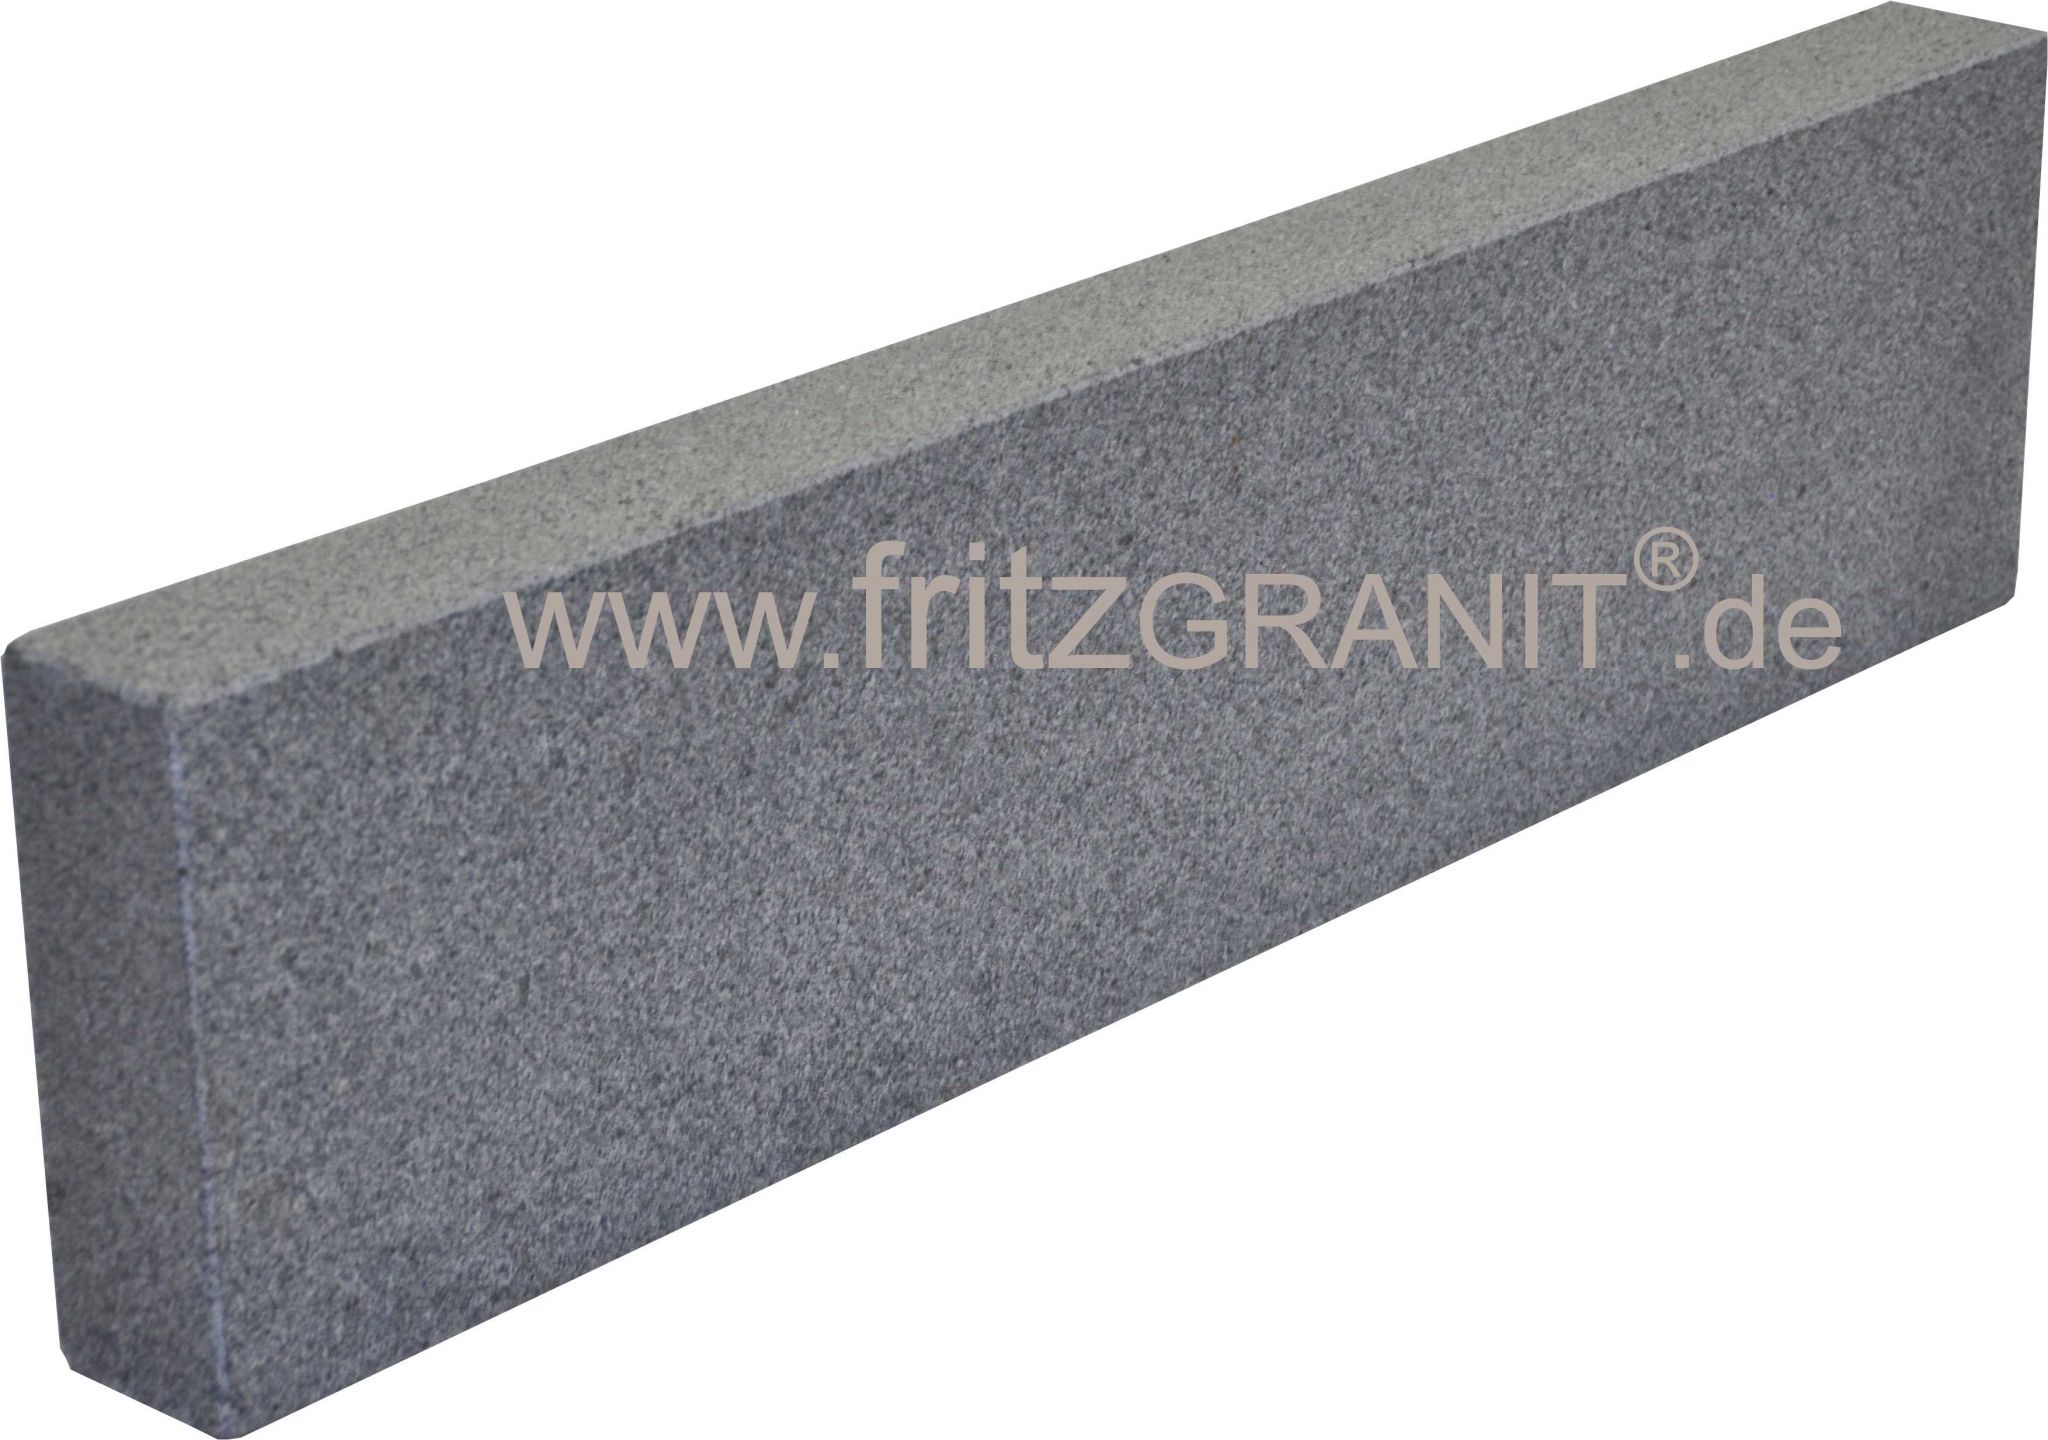 Granit Bordstein Beeteinfassung Bergama gesägt und geflammt grau 8x25x100 cm 